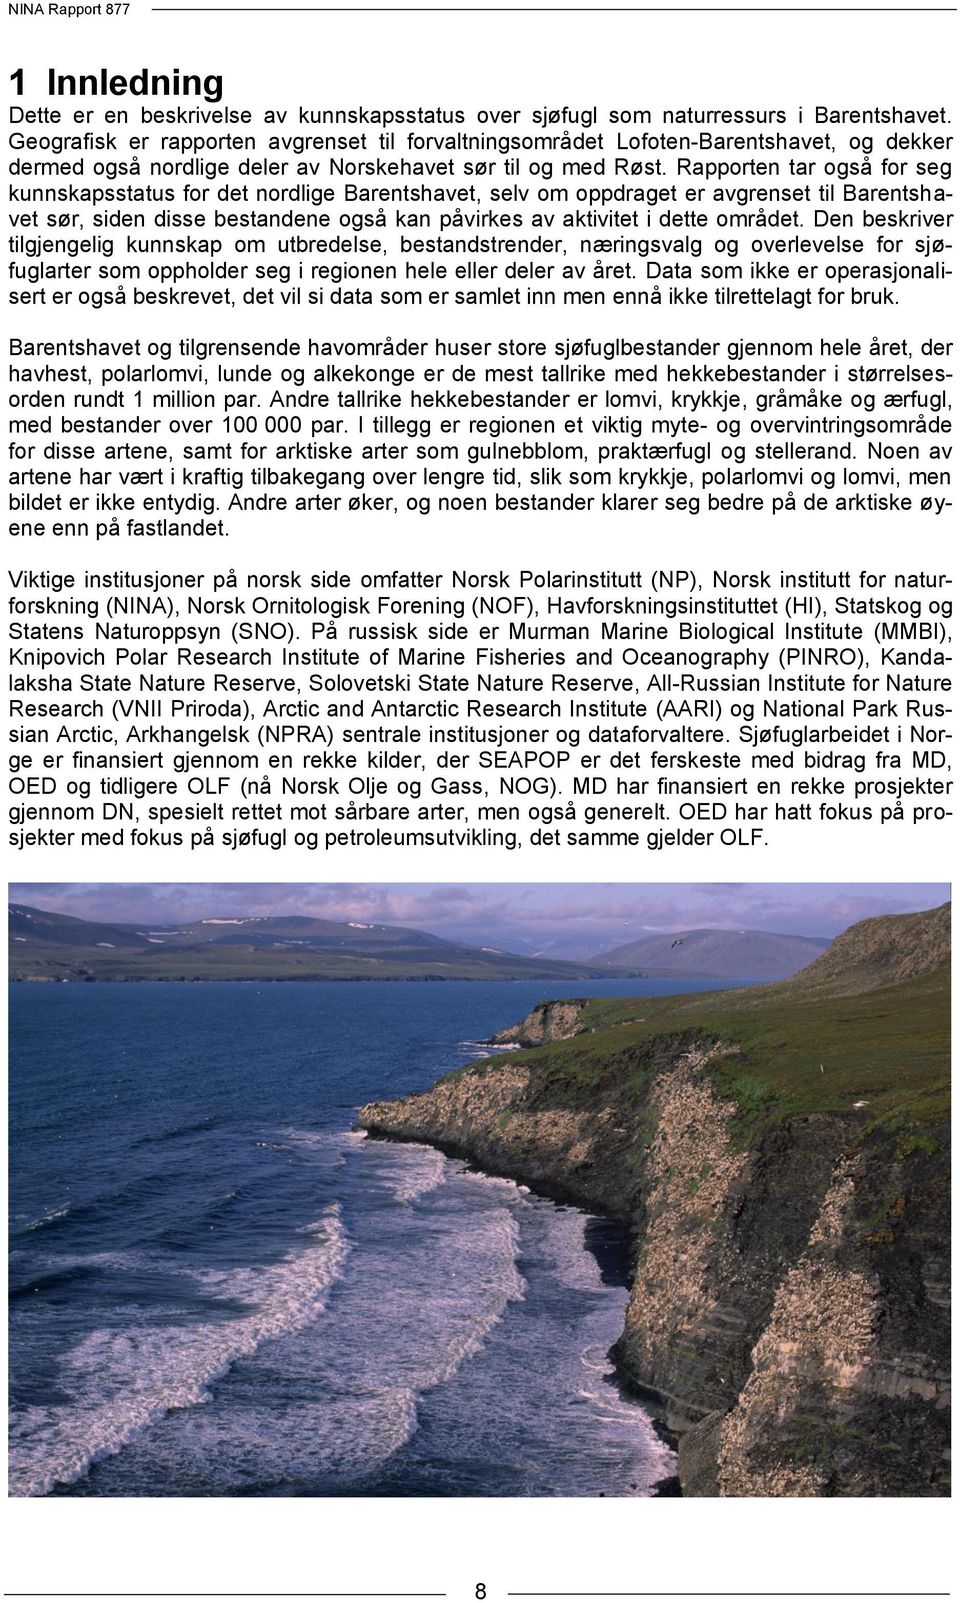 Rapporten tar også for seg kunnskapsstatus for det nordlige Barentshavet, selv om oppdraget er avgrenset til Barentshavet sør, siden disse bestandene også kan påvirkes av aktivitet i dette området.